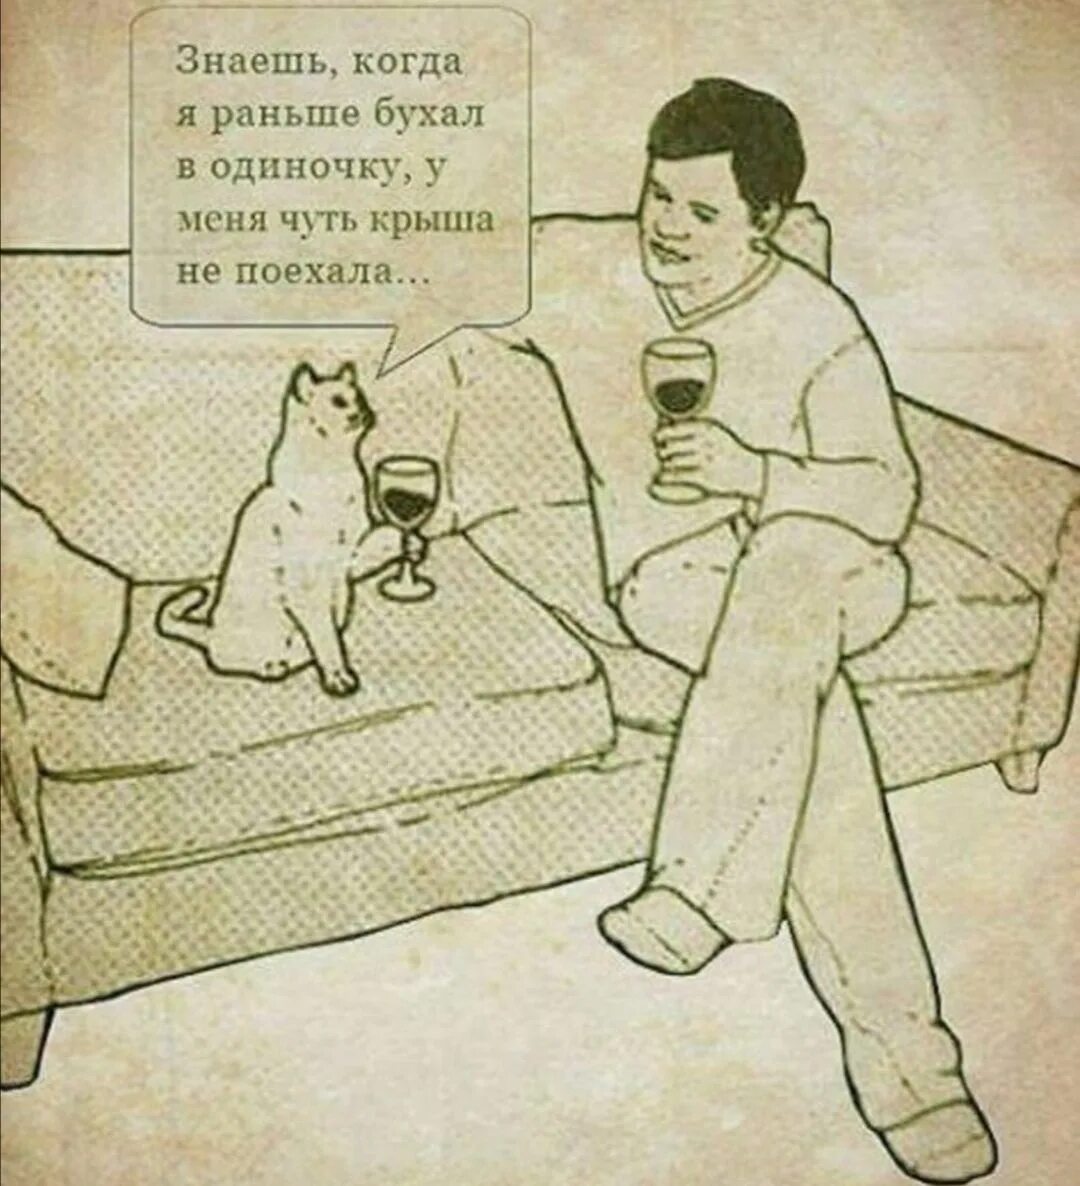 Человек пьет с котом. Кот забухал. Одиночка юмор. Кот бухает. Одинокий мужчина не курит не пьет